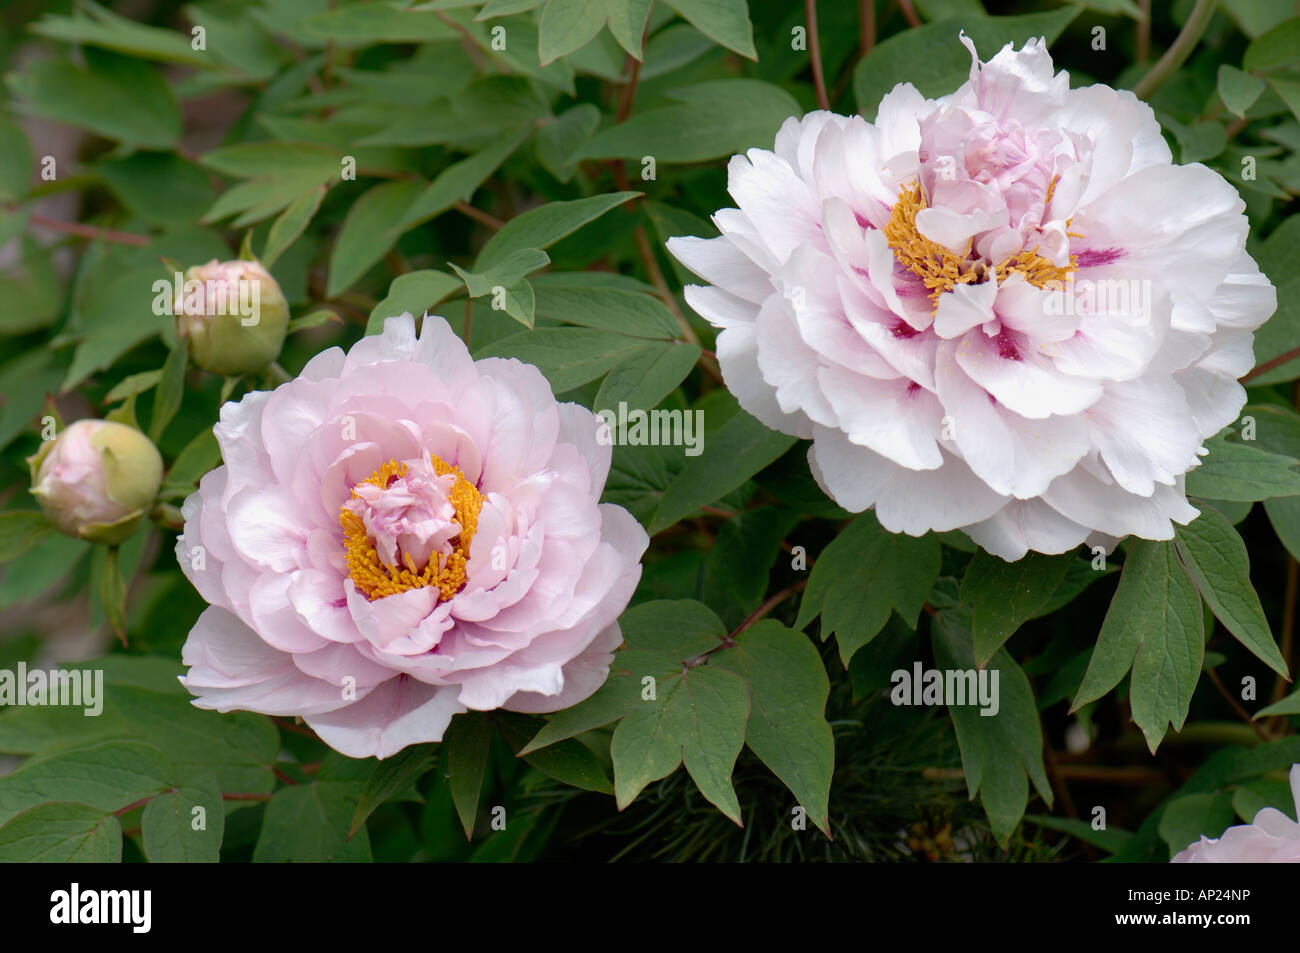 Pivoine arbustive (Paeonia x suffructicosa variété blanche de son), fleurs  Photo Stock - Alamy